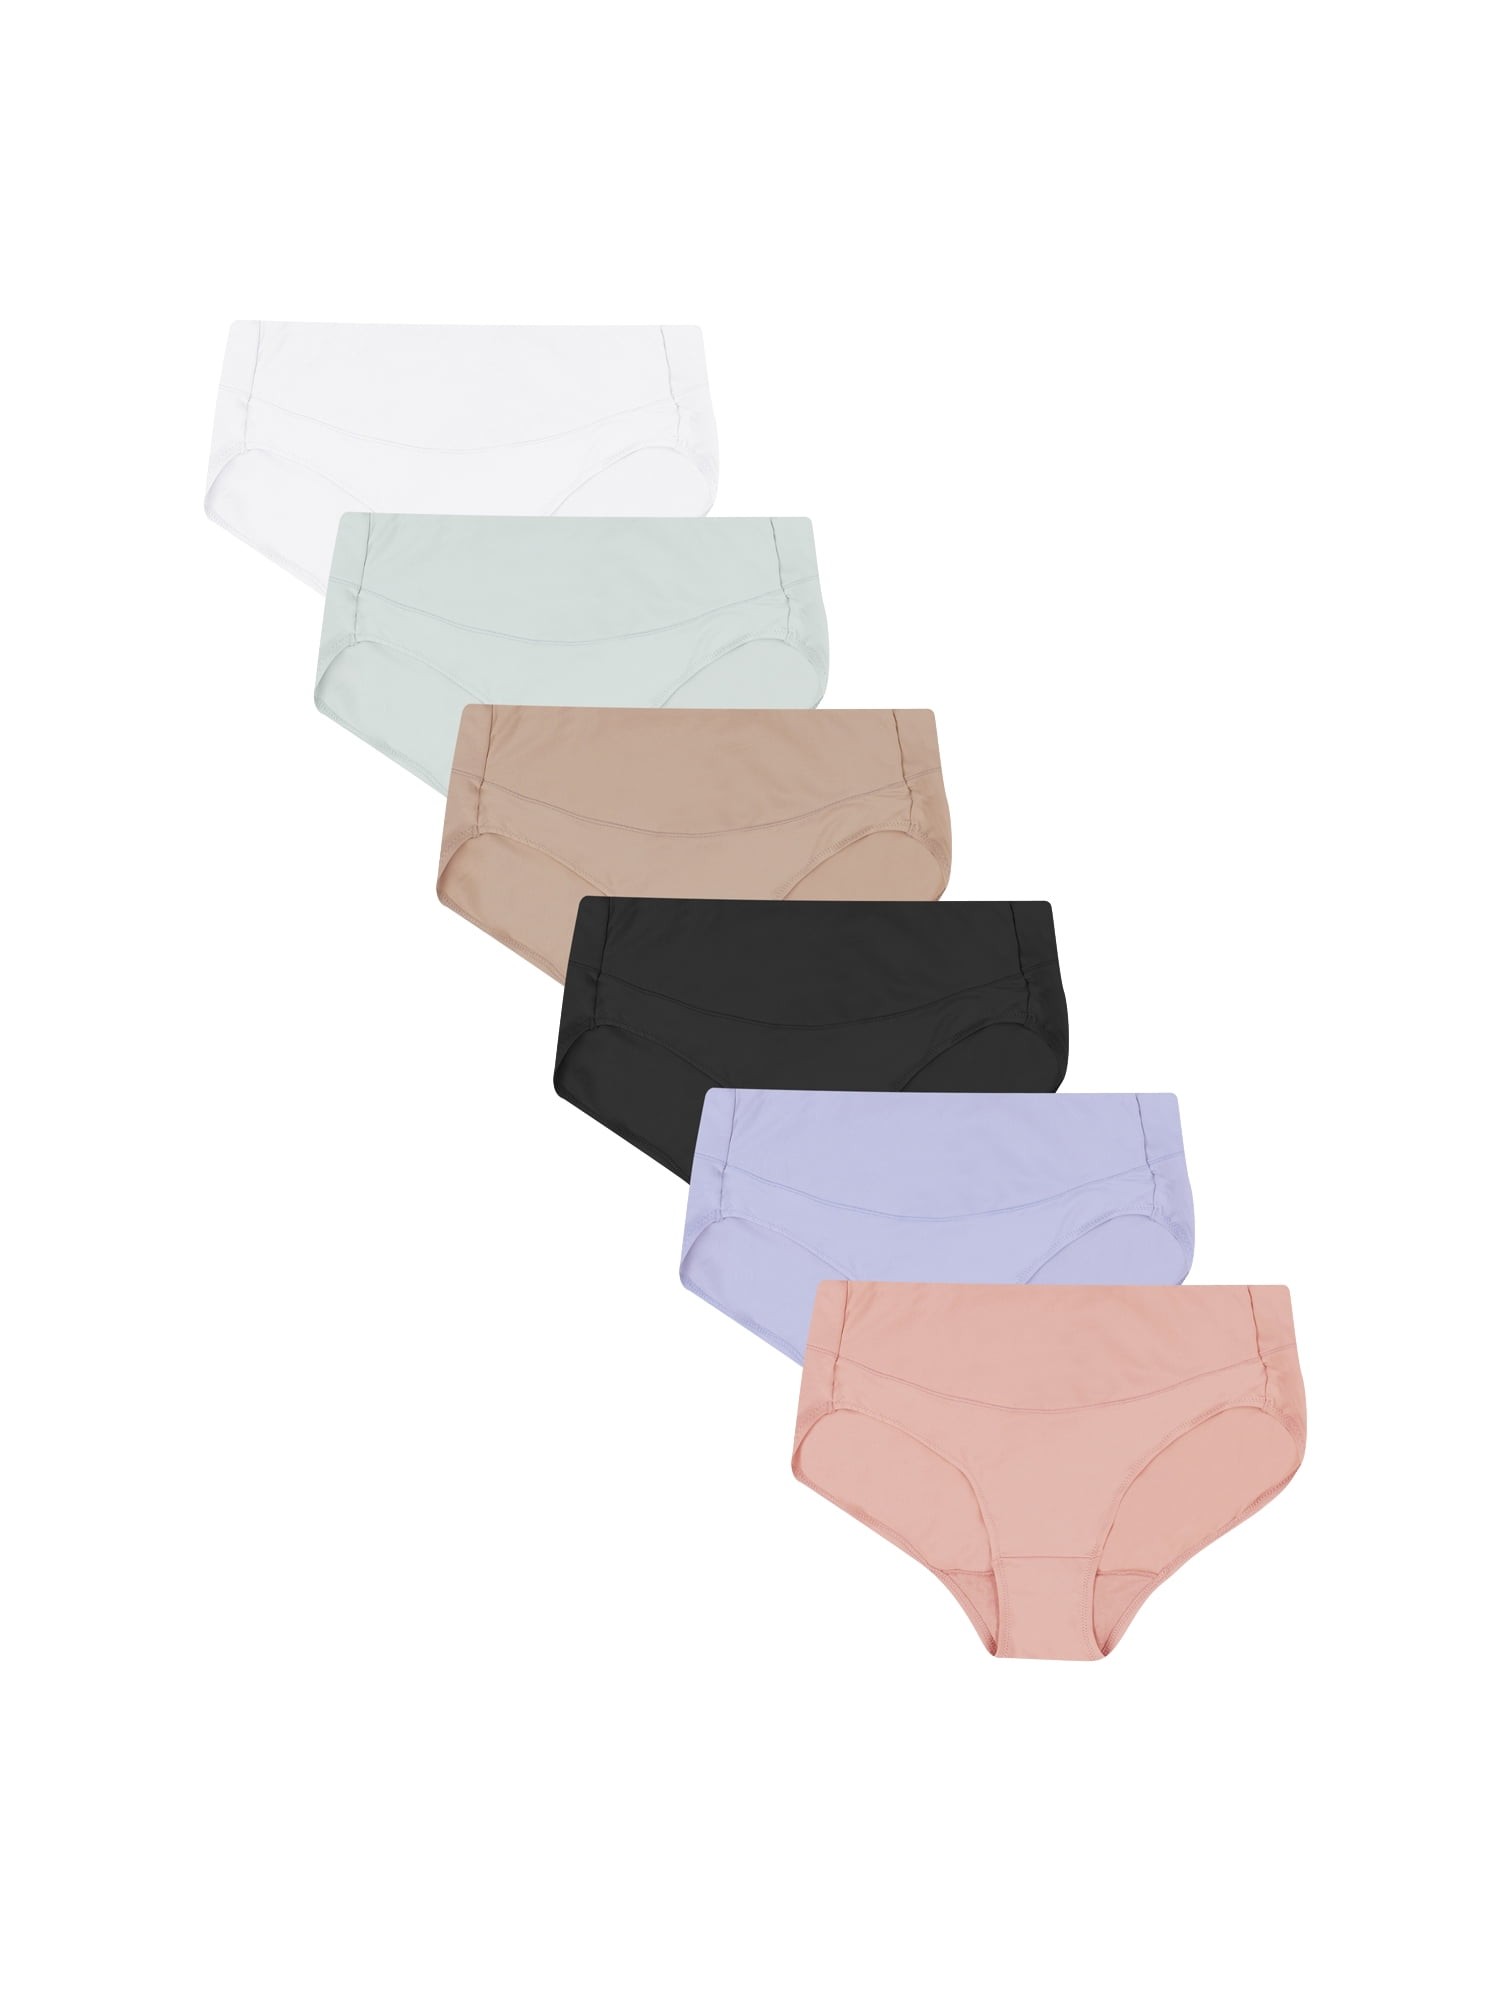 Mejores ofertas e historial de precios de Hanes Women's Signature Smoothing  Microfiber Hi-Cut Underwear, 6-Pack en